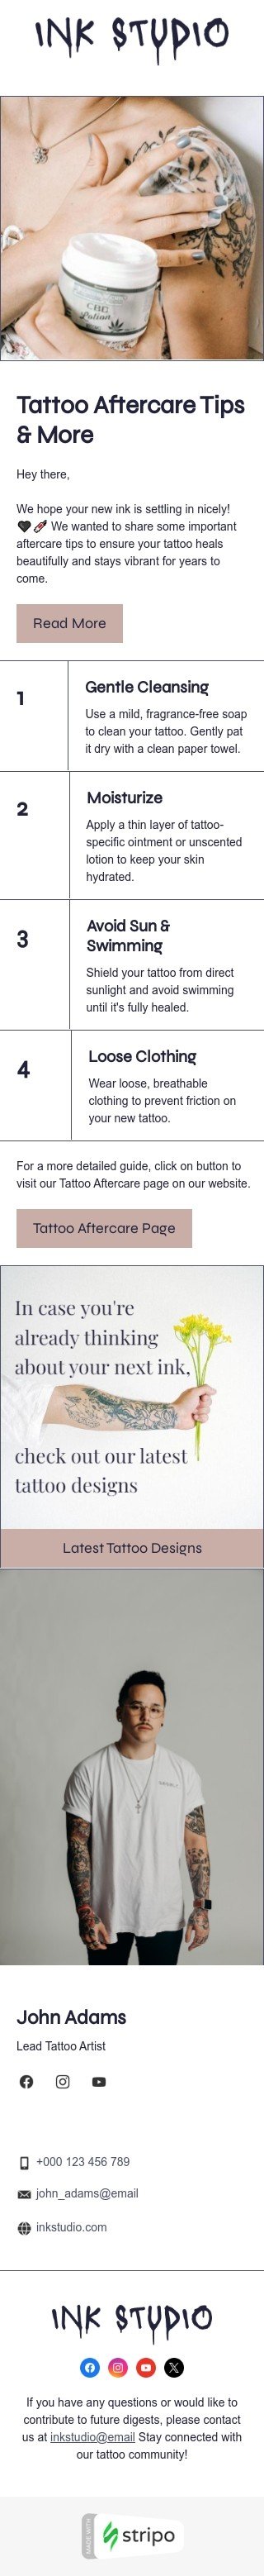 Plantilla de correo electrónico «Consejos para el cuidado posterior del tatuaje y más» de boletines para la industria de tatuajes Vista de móvil